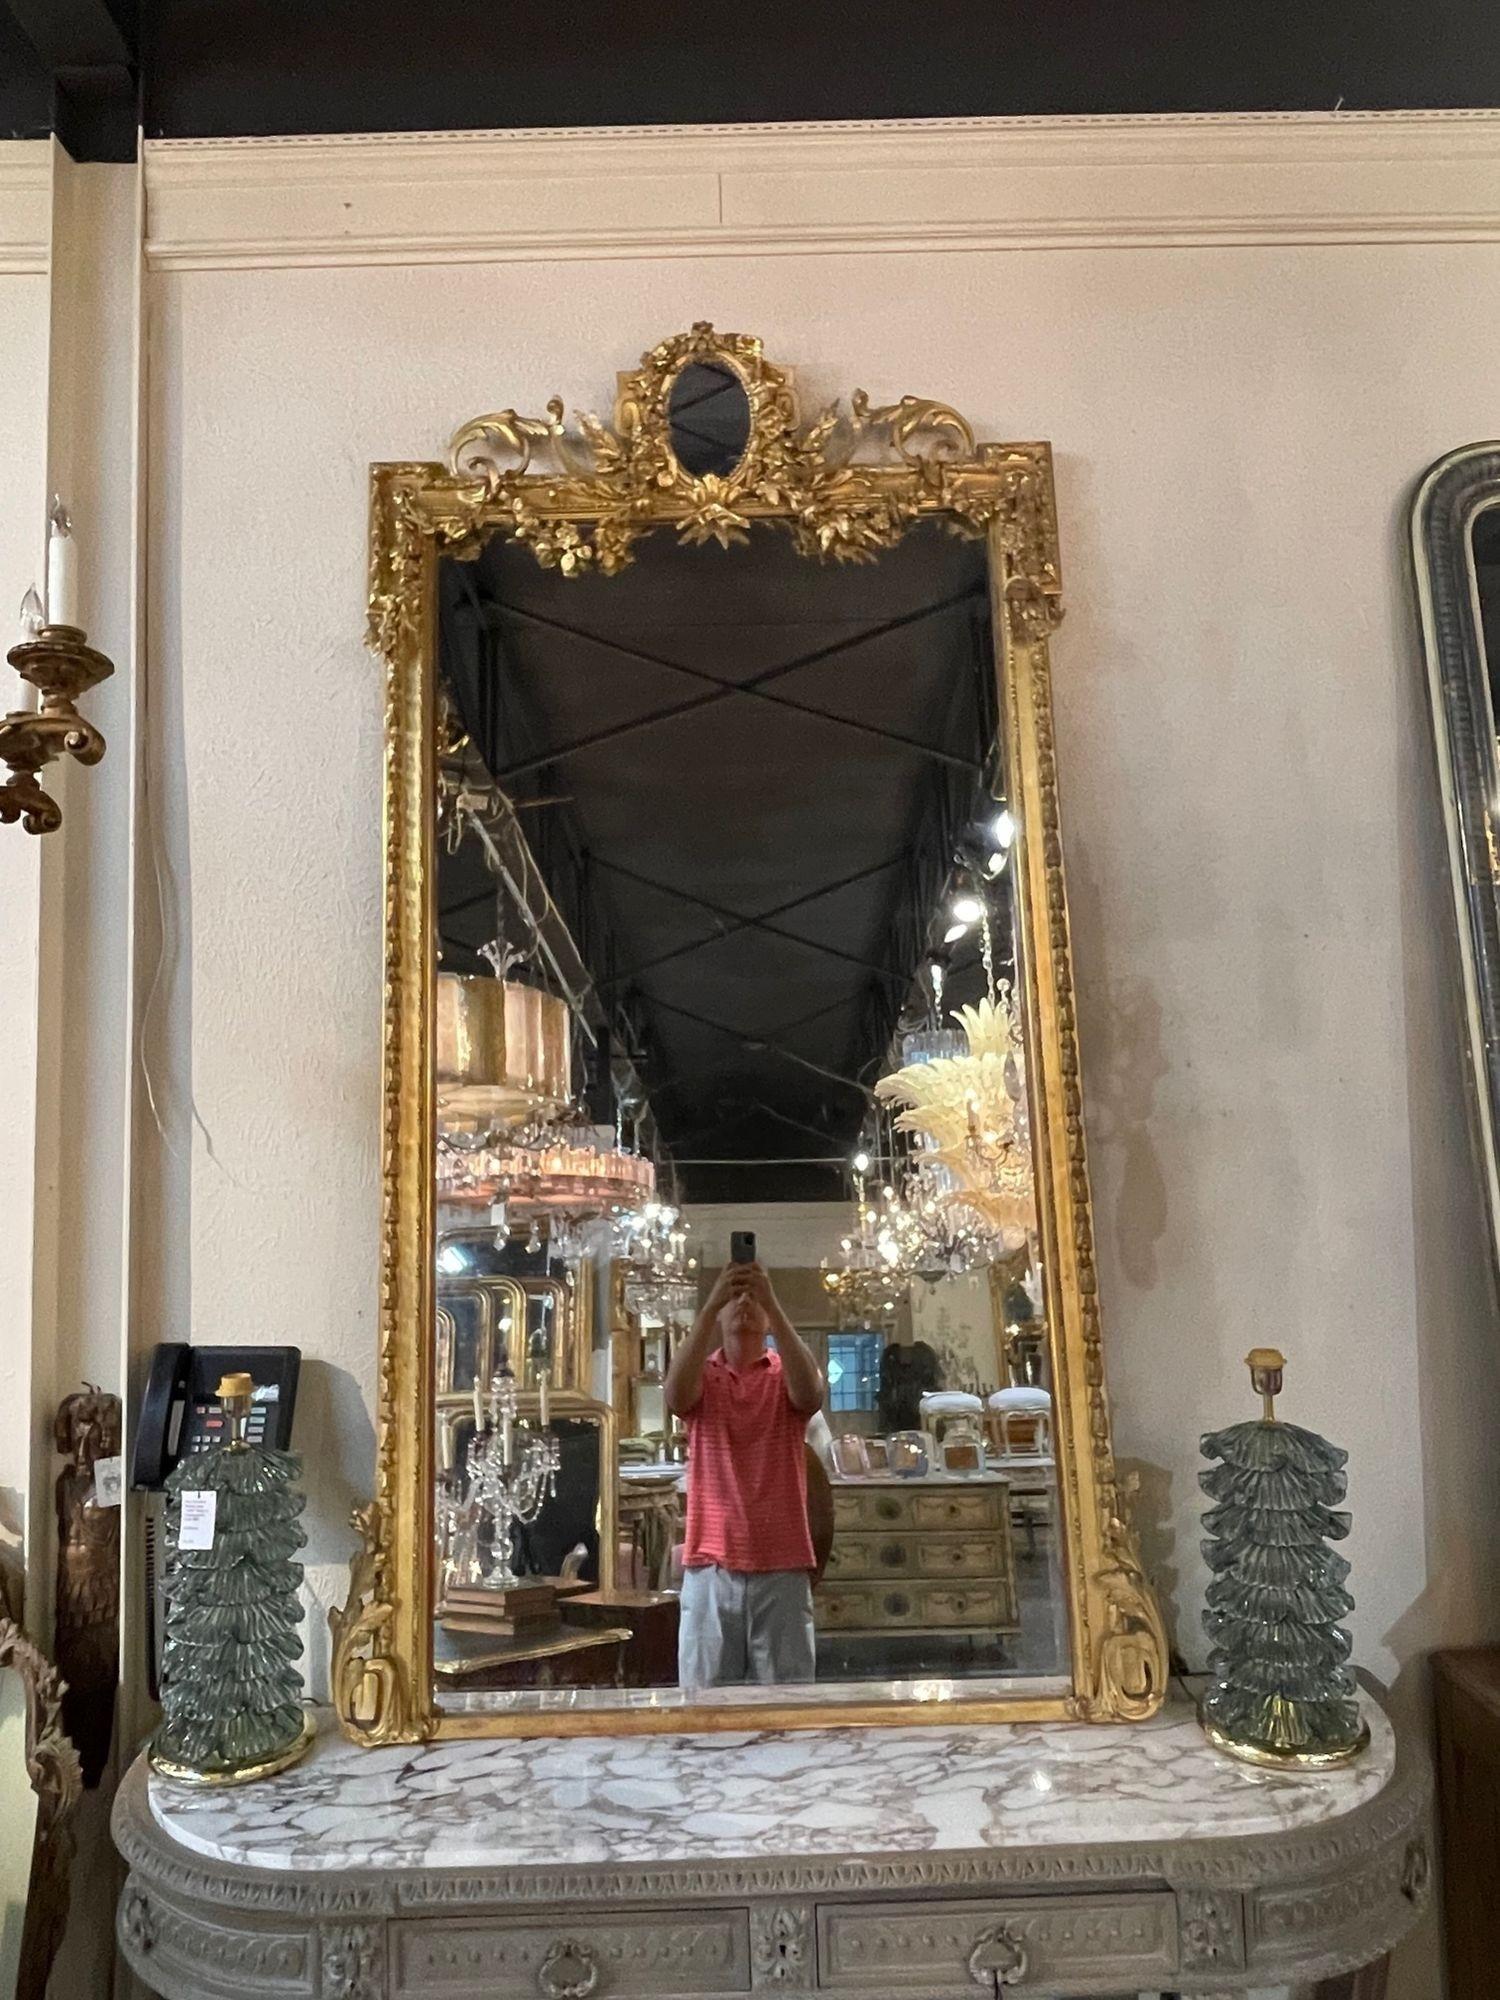 Elégant miroir Louis XVI de grande taille, datant du XIXe siècle, en bois sculpté et doré. Les sculptures sont très fines, avec de belles fleurs et des feuilles, et un petit miroir au sommet. Une pièce vraiment exceptionnelle ! Très impressionnant !